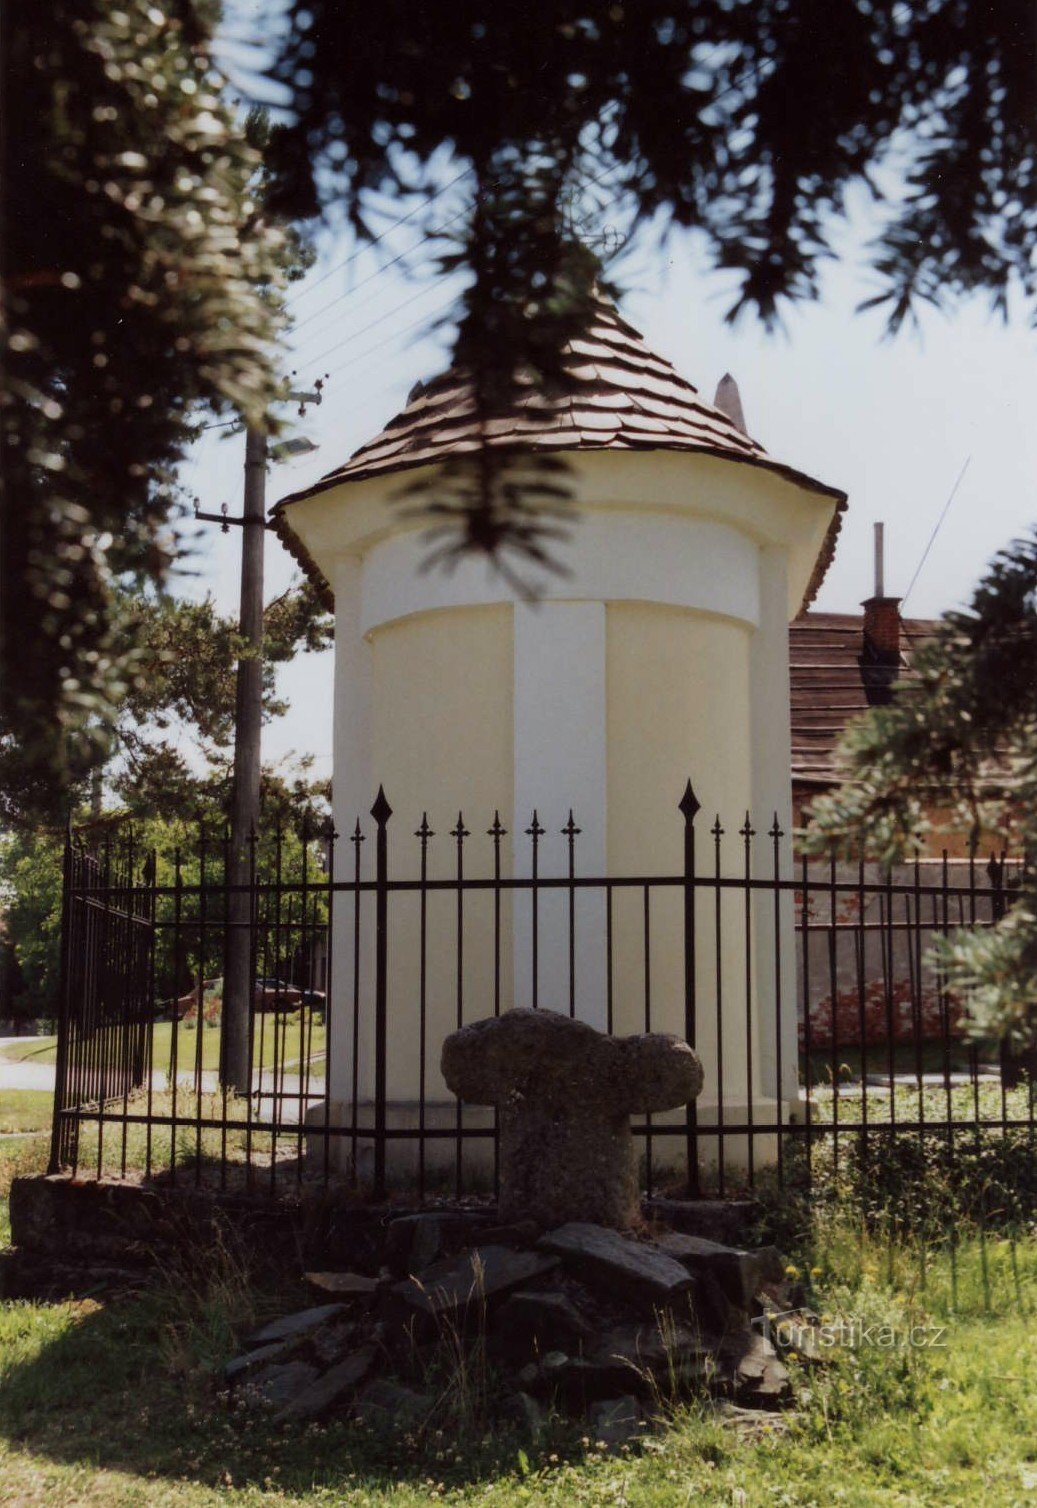 クレロフ - 礼拝堂と和解の十字架